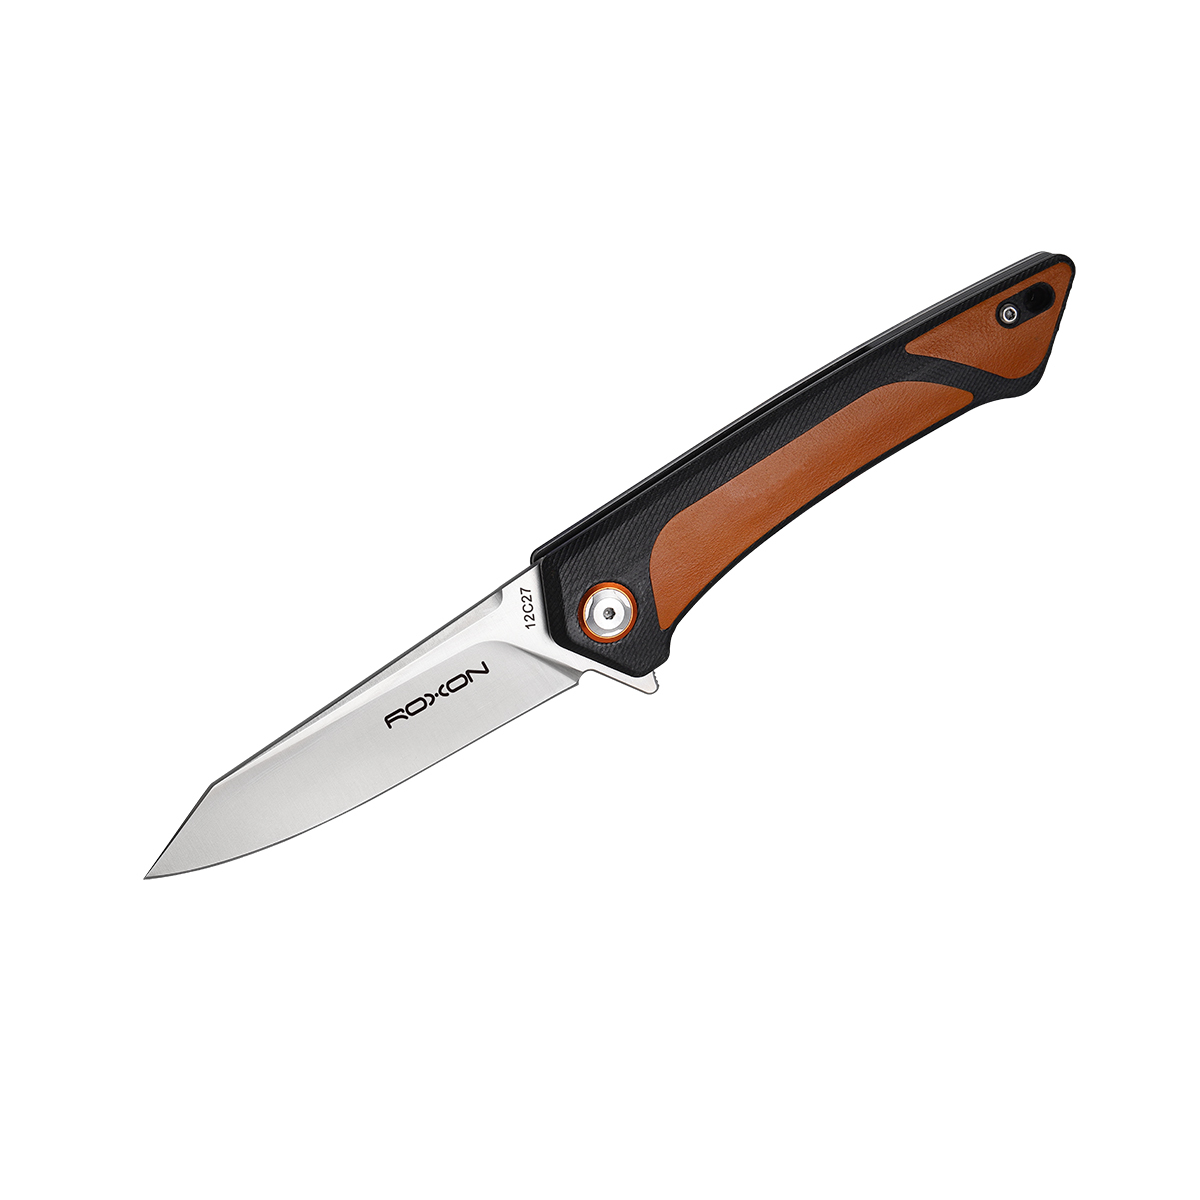 Складной нож Roxon K2, сталь sandvik 12C27, рукоять G10/кожа, коричневый